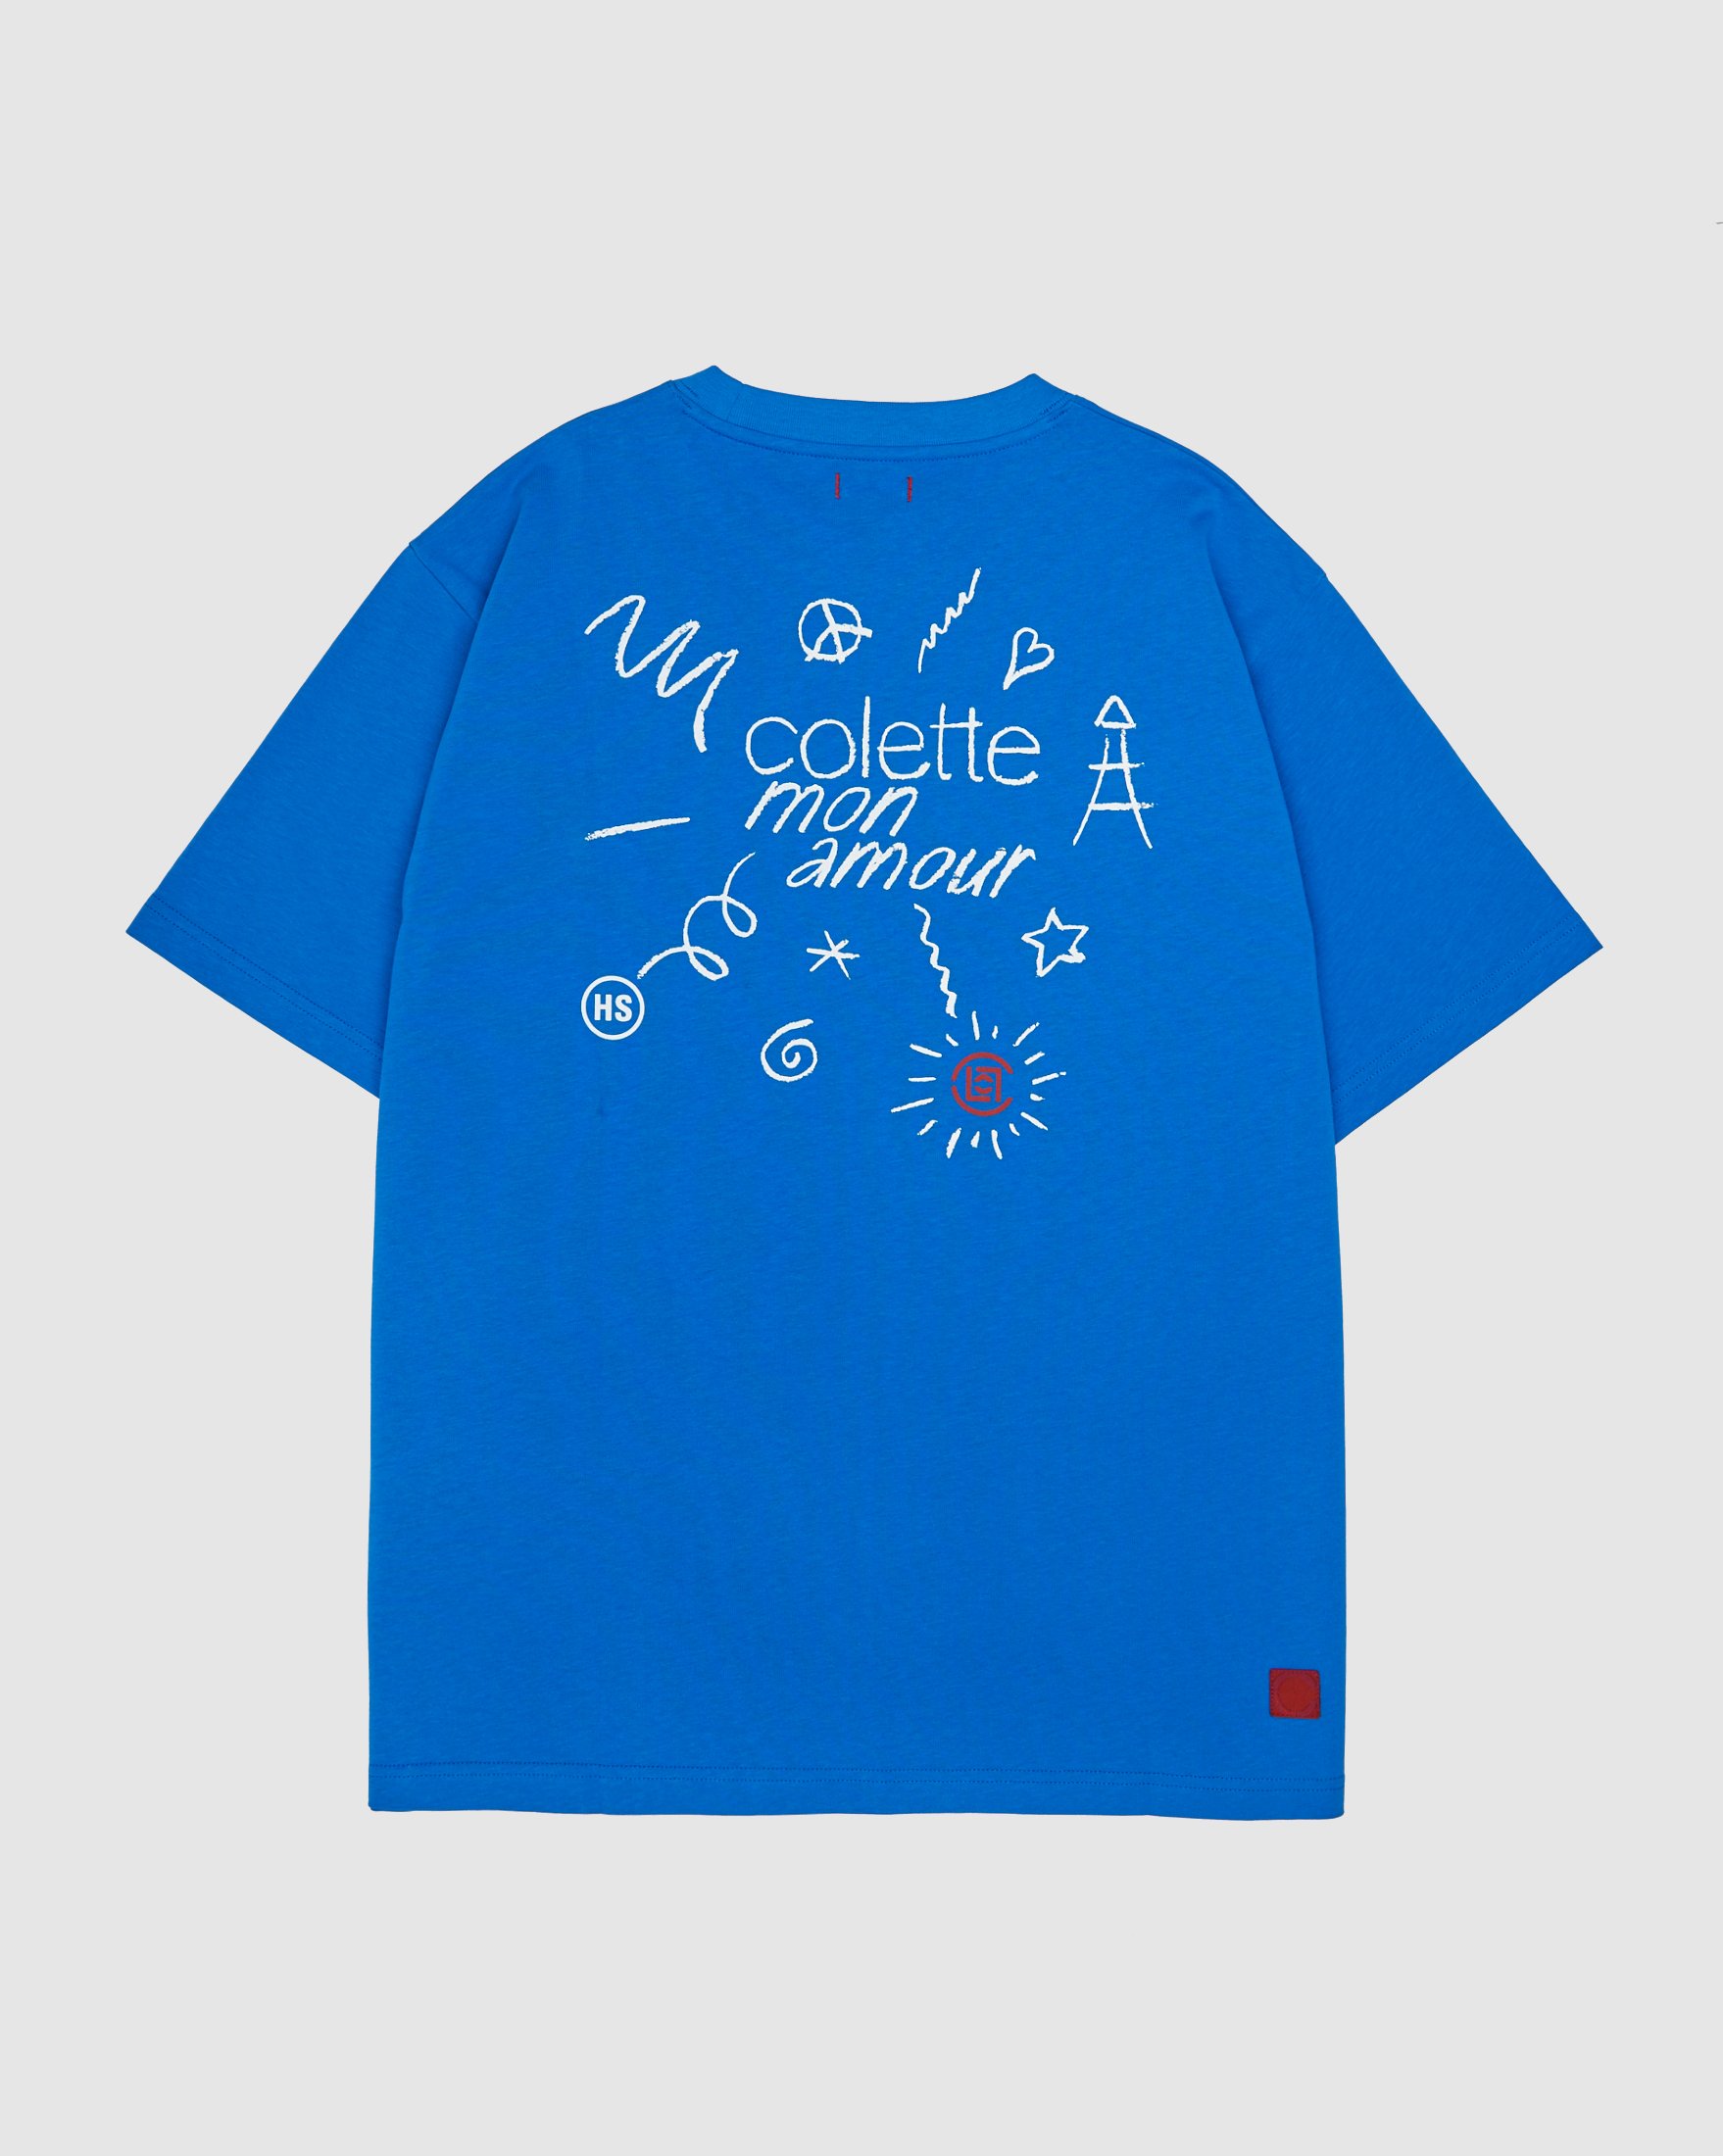 Colette Mon Amour - CLOT Blue T-Shirt - Clothing - Blue - Image 1